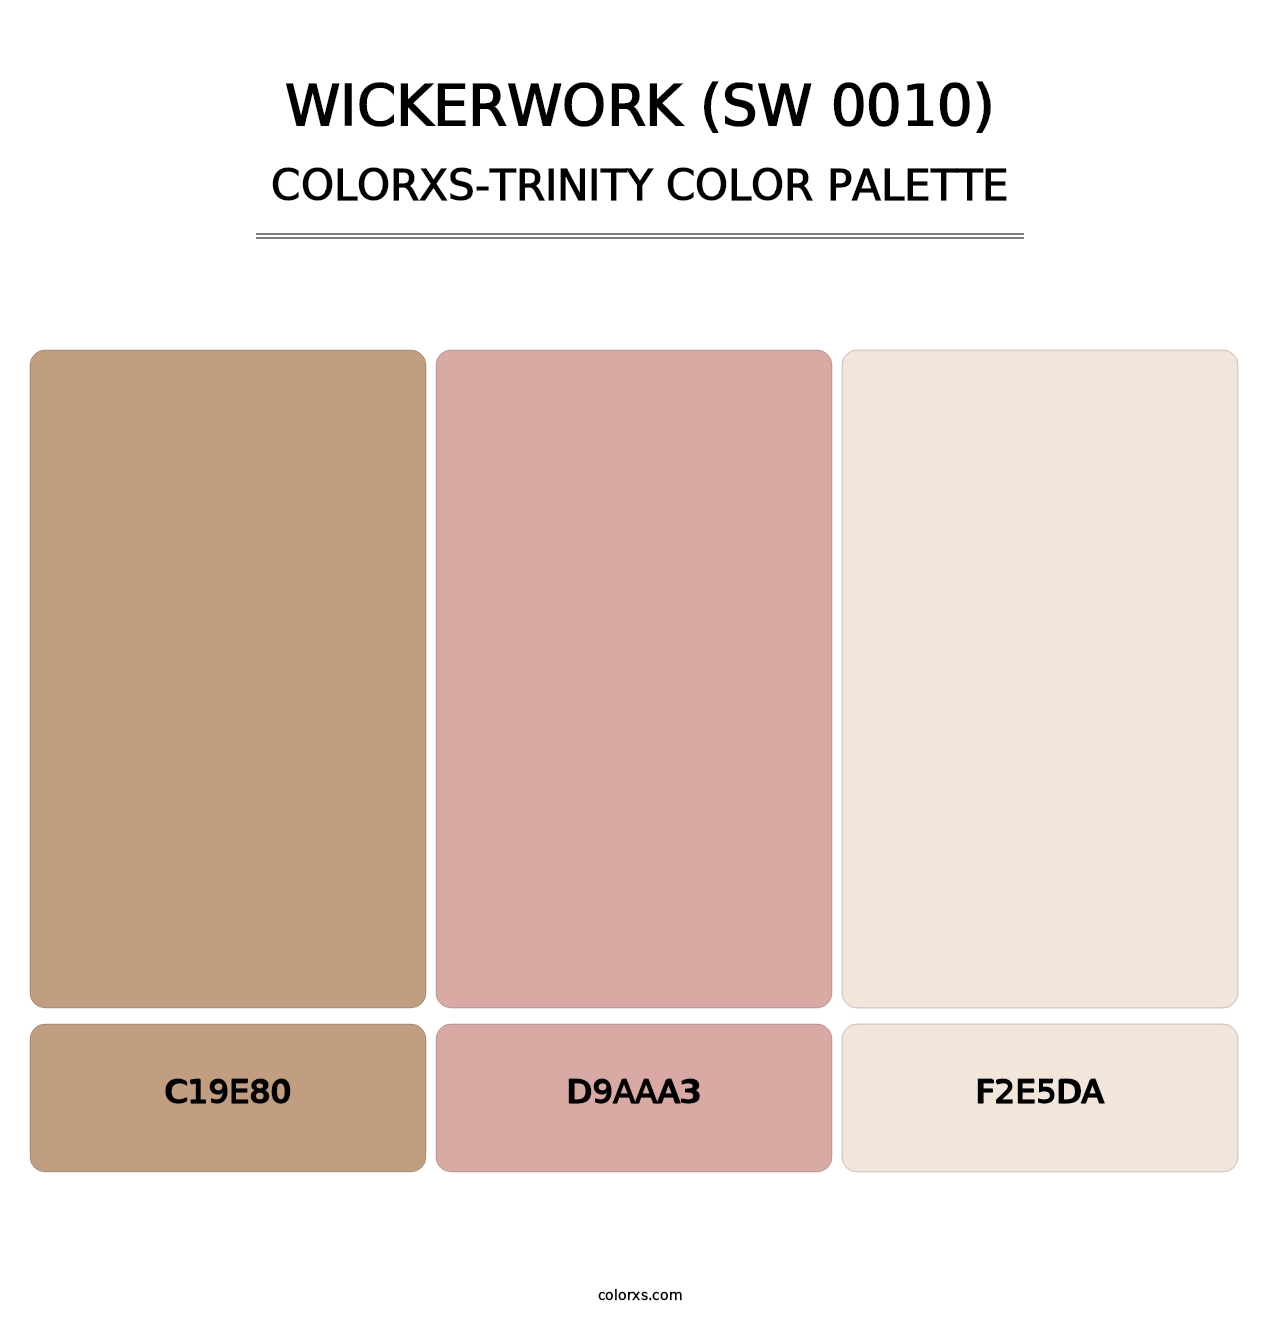 Wickerwork (SW 0010) - Colorxs Trinity Palette